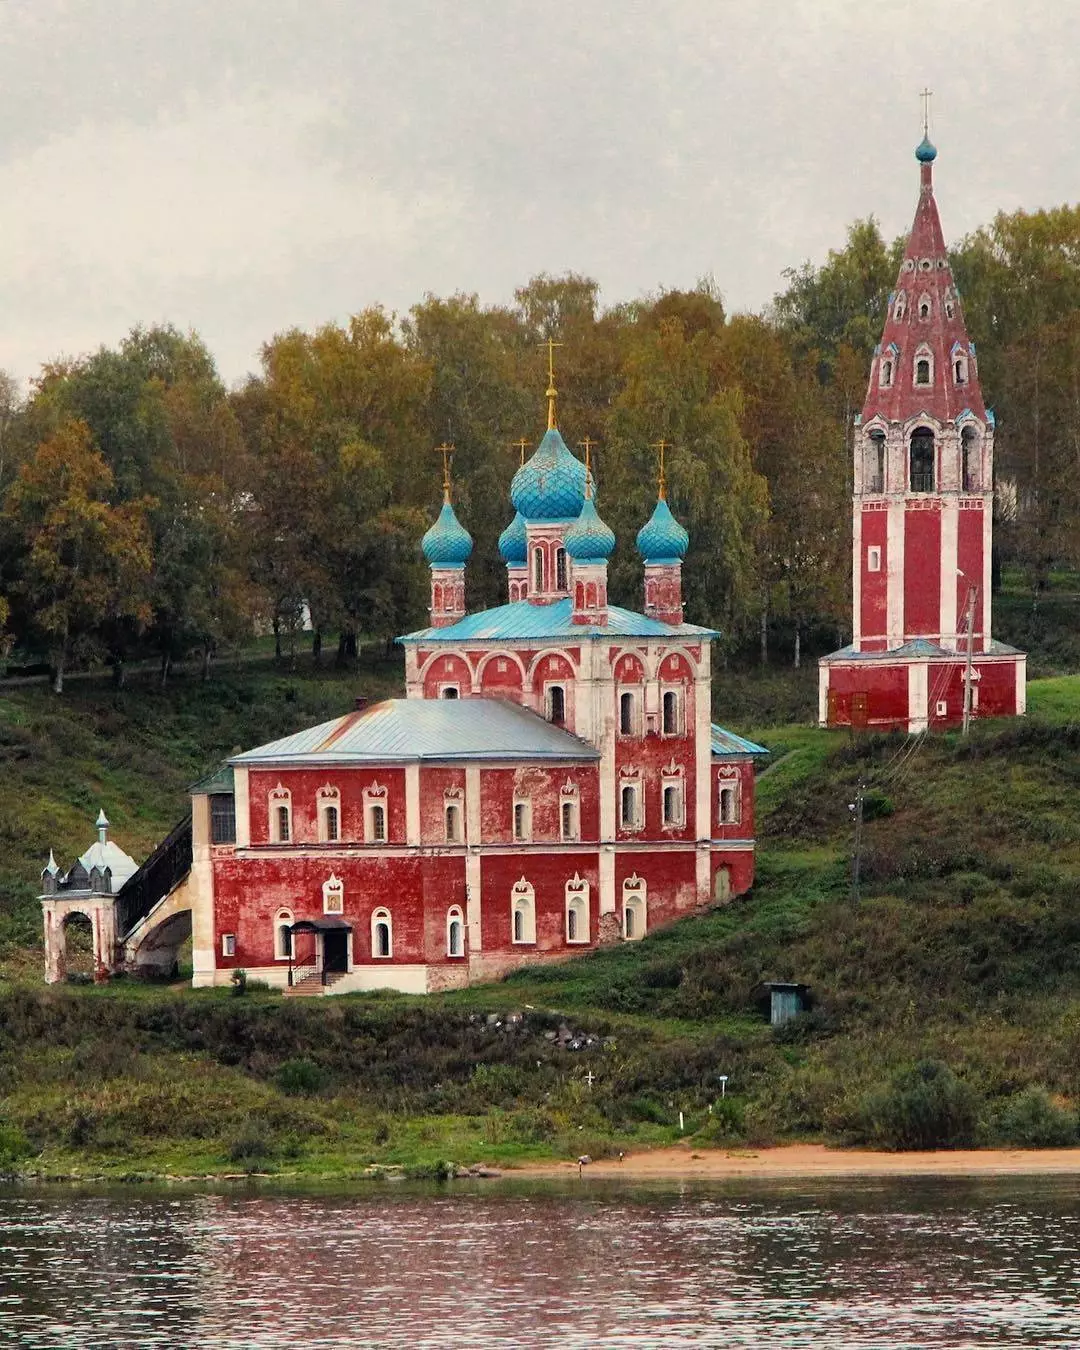 Описание казанской преображенской церкви в г. тутаев | православные паломничества